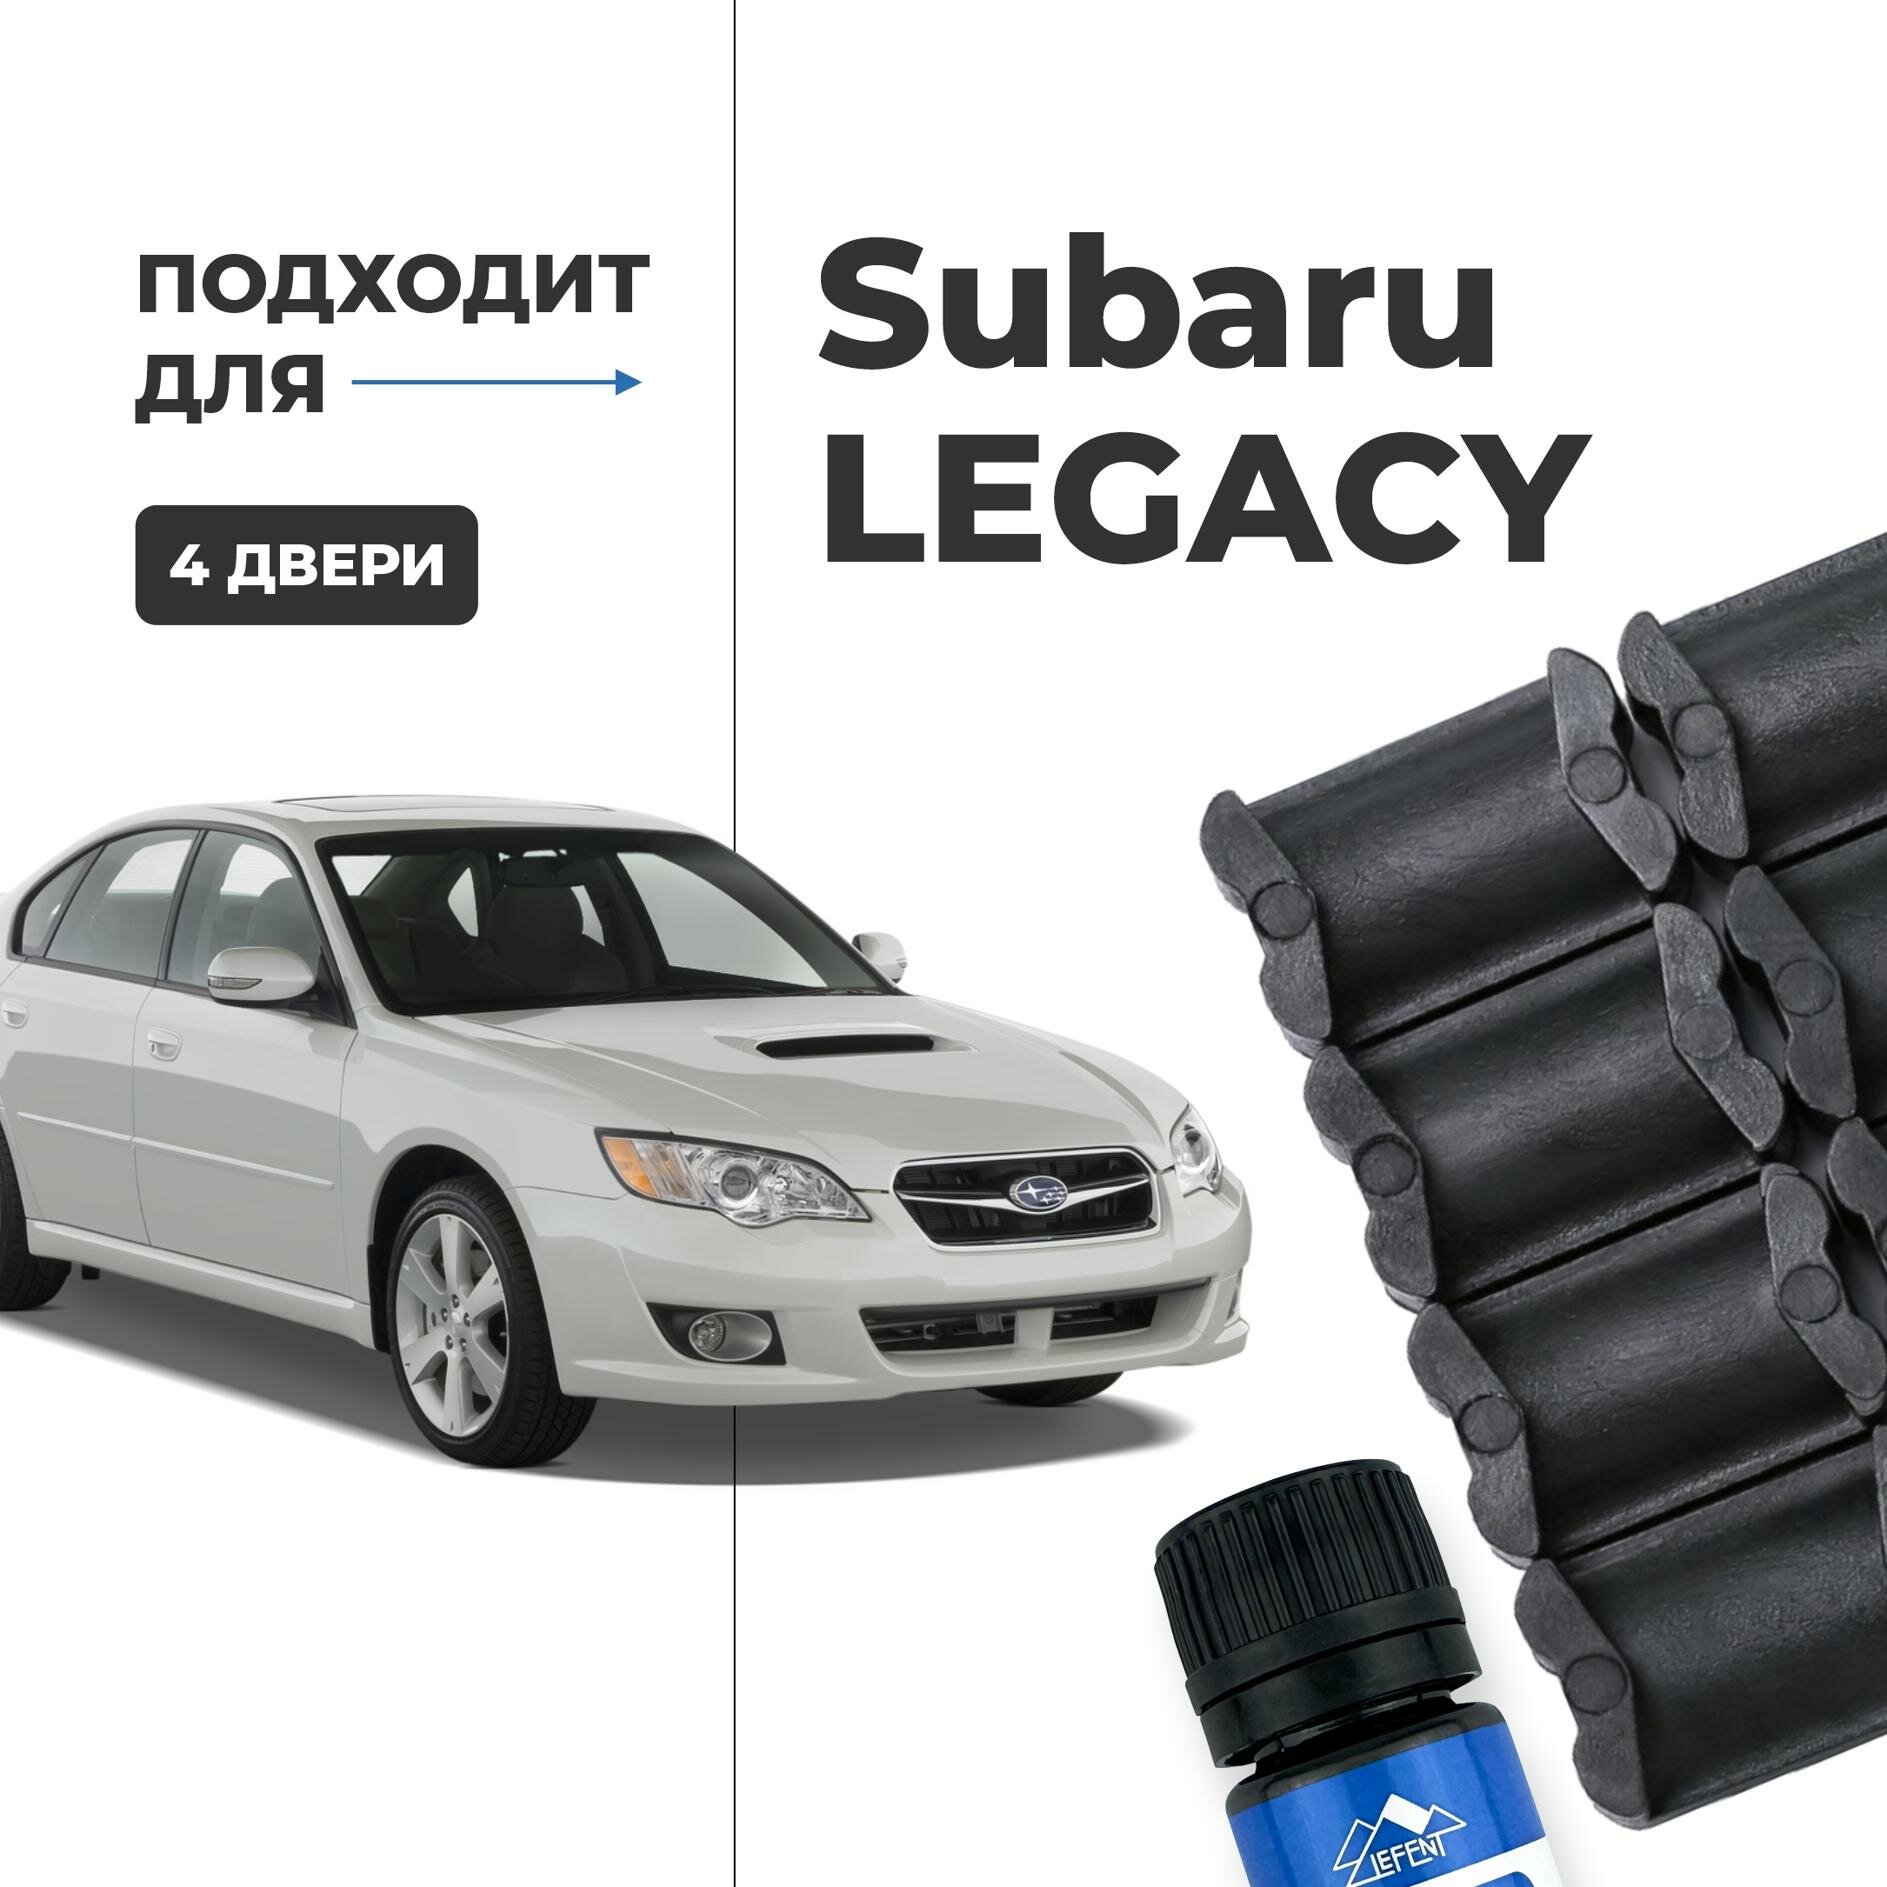 Ремкомплект ограничителей на 4 двери двери Subaru LEGACY Кузова смотрите в описании - 1988-2017. Комплект ремонта фиксаторов Субару Легаси